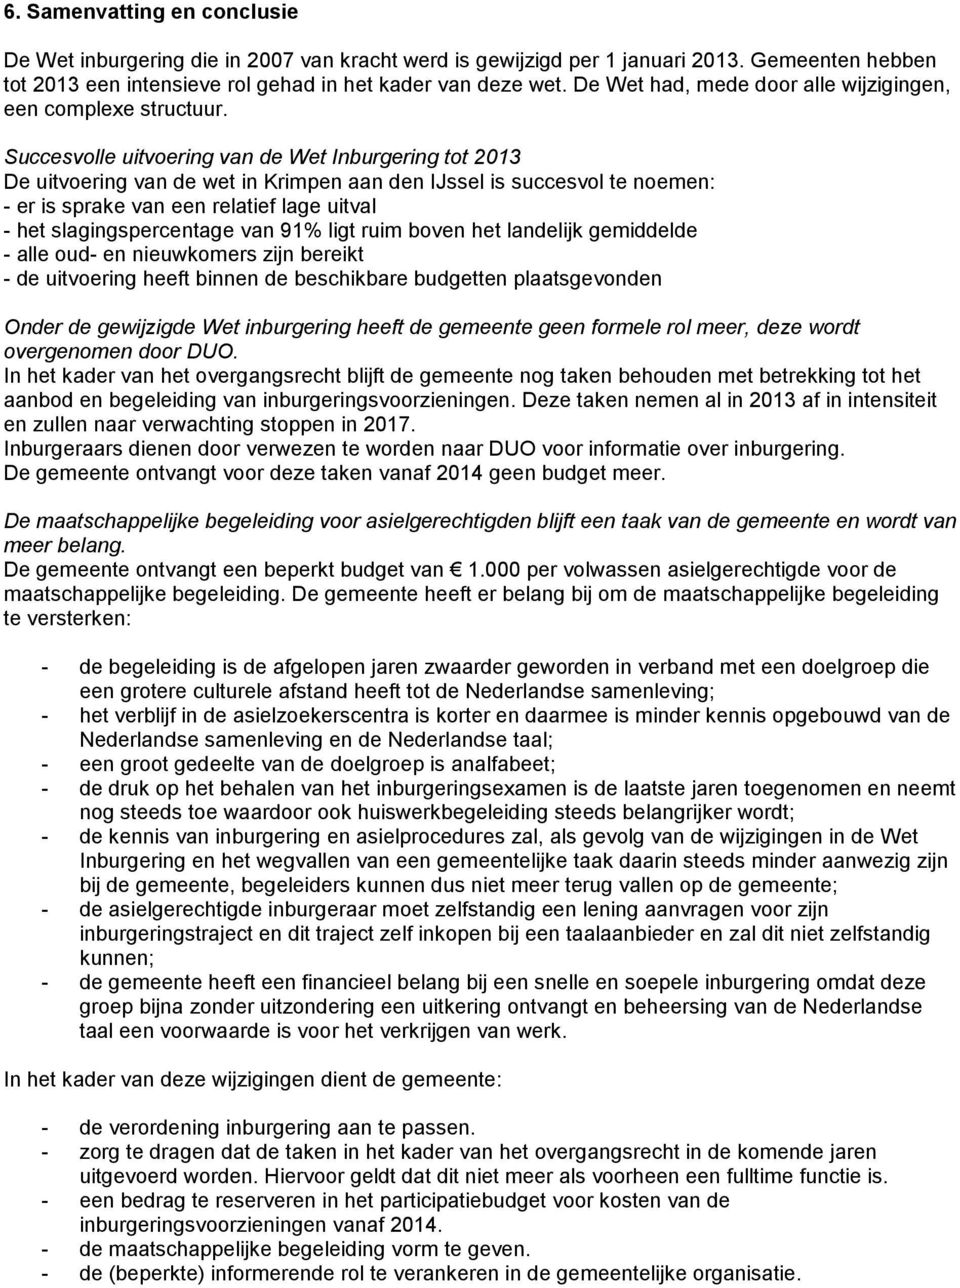 Succesvolle uitvoering van de Wet Inburgering tot 2013 De uitvoering van de wet in Krimpen aan den IJssel is succesvol te noemen: - er is sprake van een relatief lage uitval - het slagingspercentage